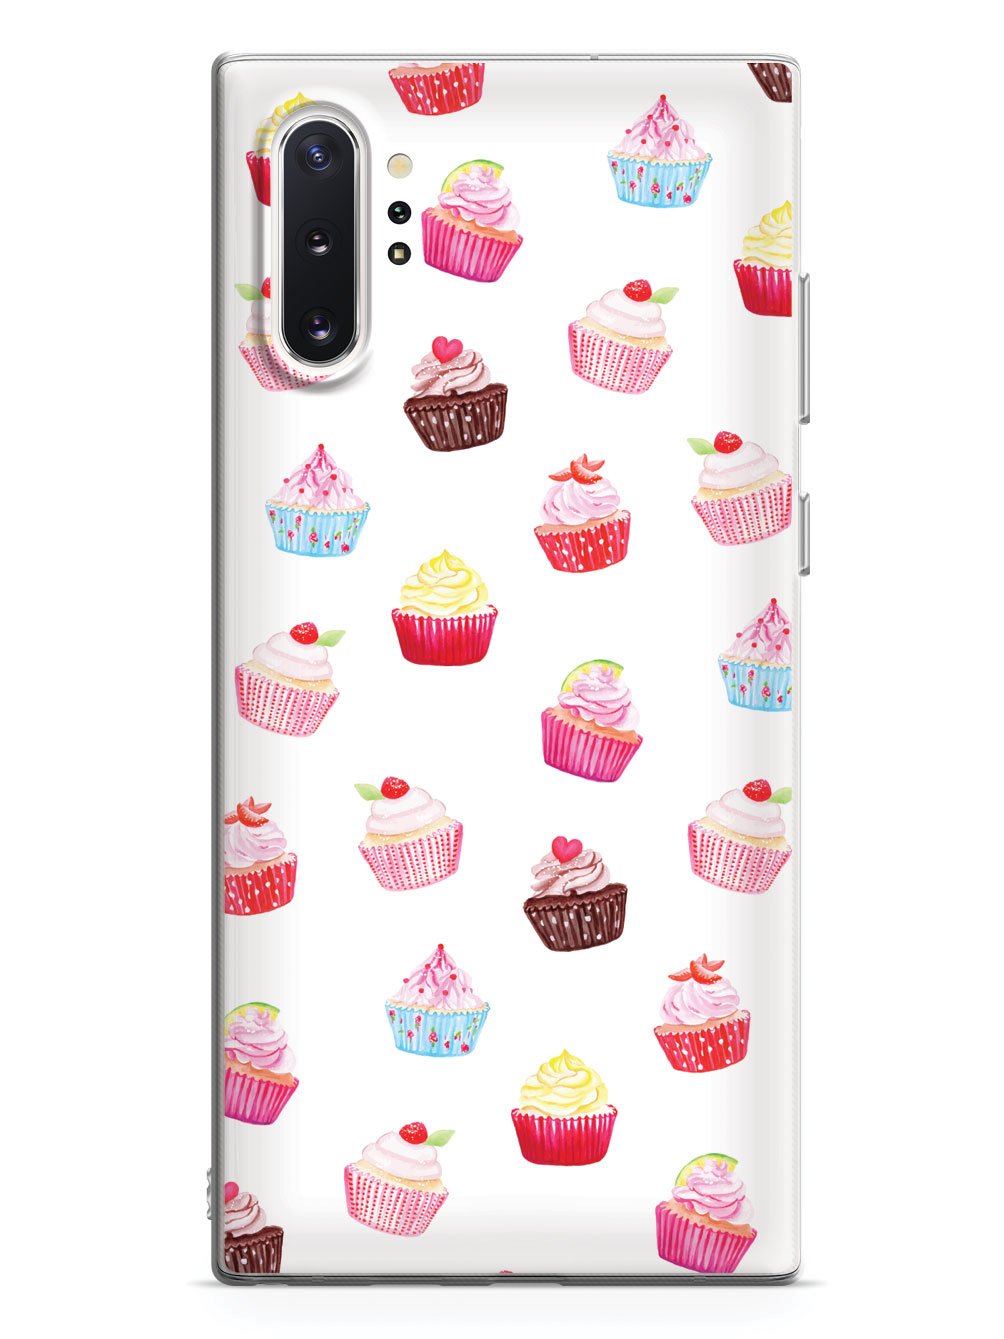 Cute Cupcake Pattern Case